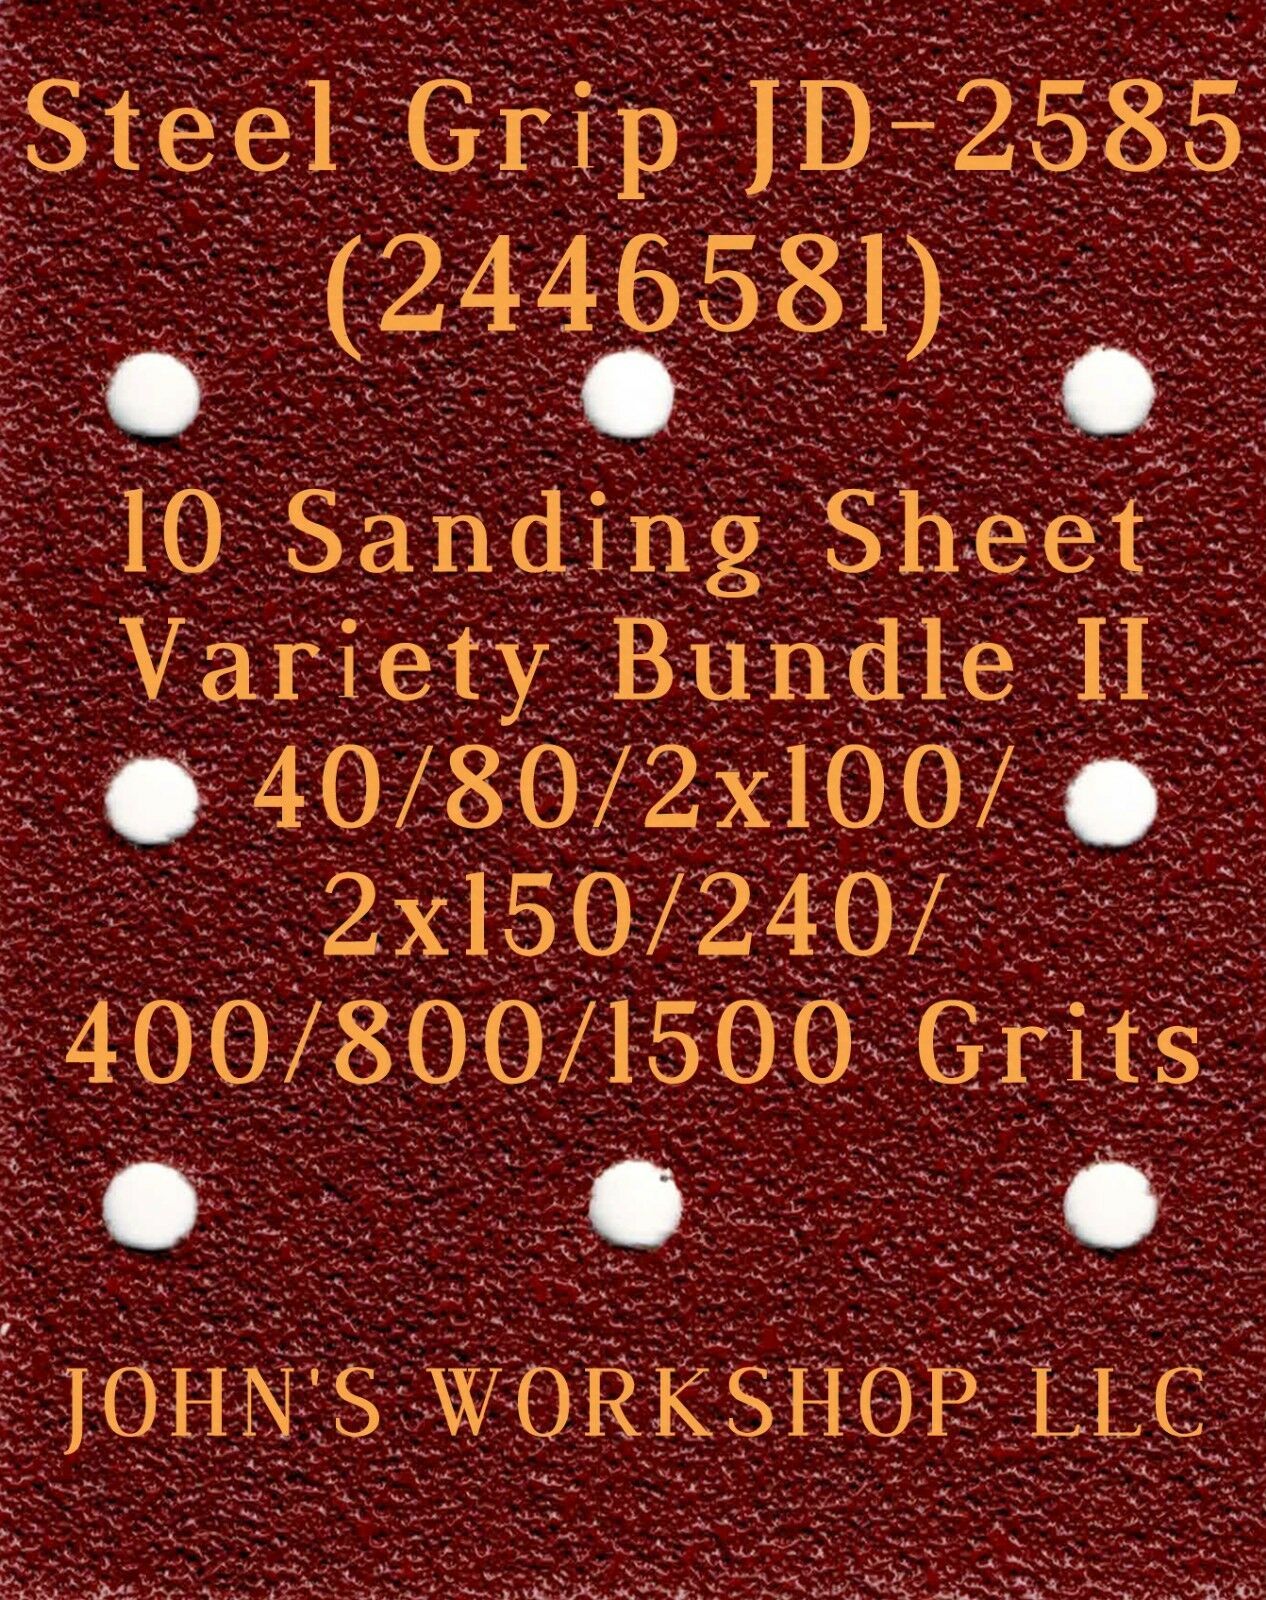 Primary image for Steel Grip JD-2585 - 40/80/100/150/240/400/800/1500 - 10 Sheet Variety Bundle II